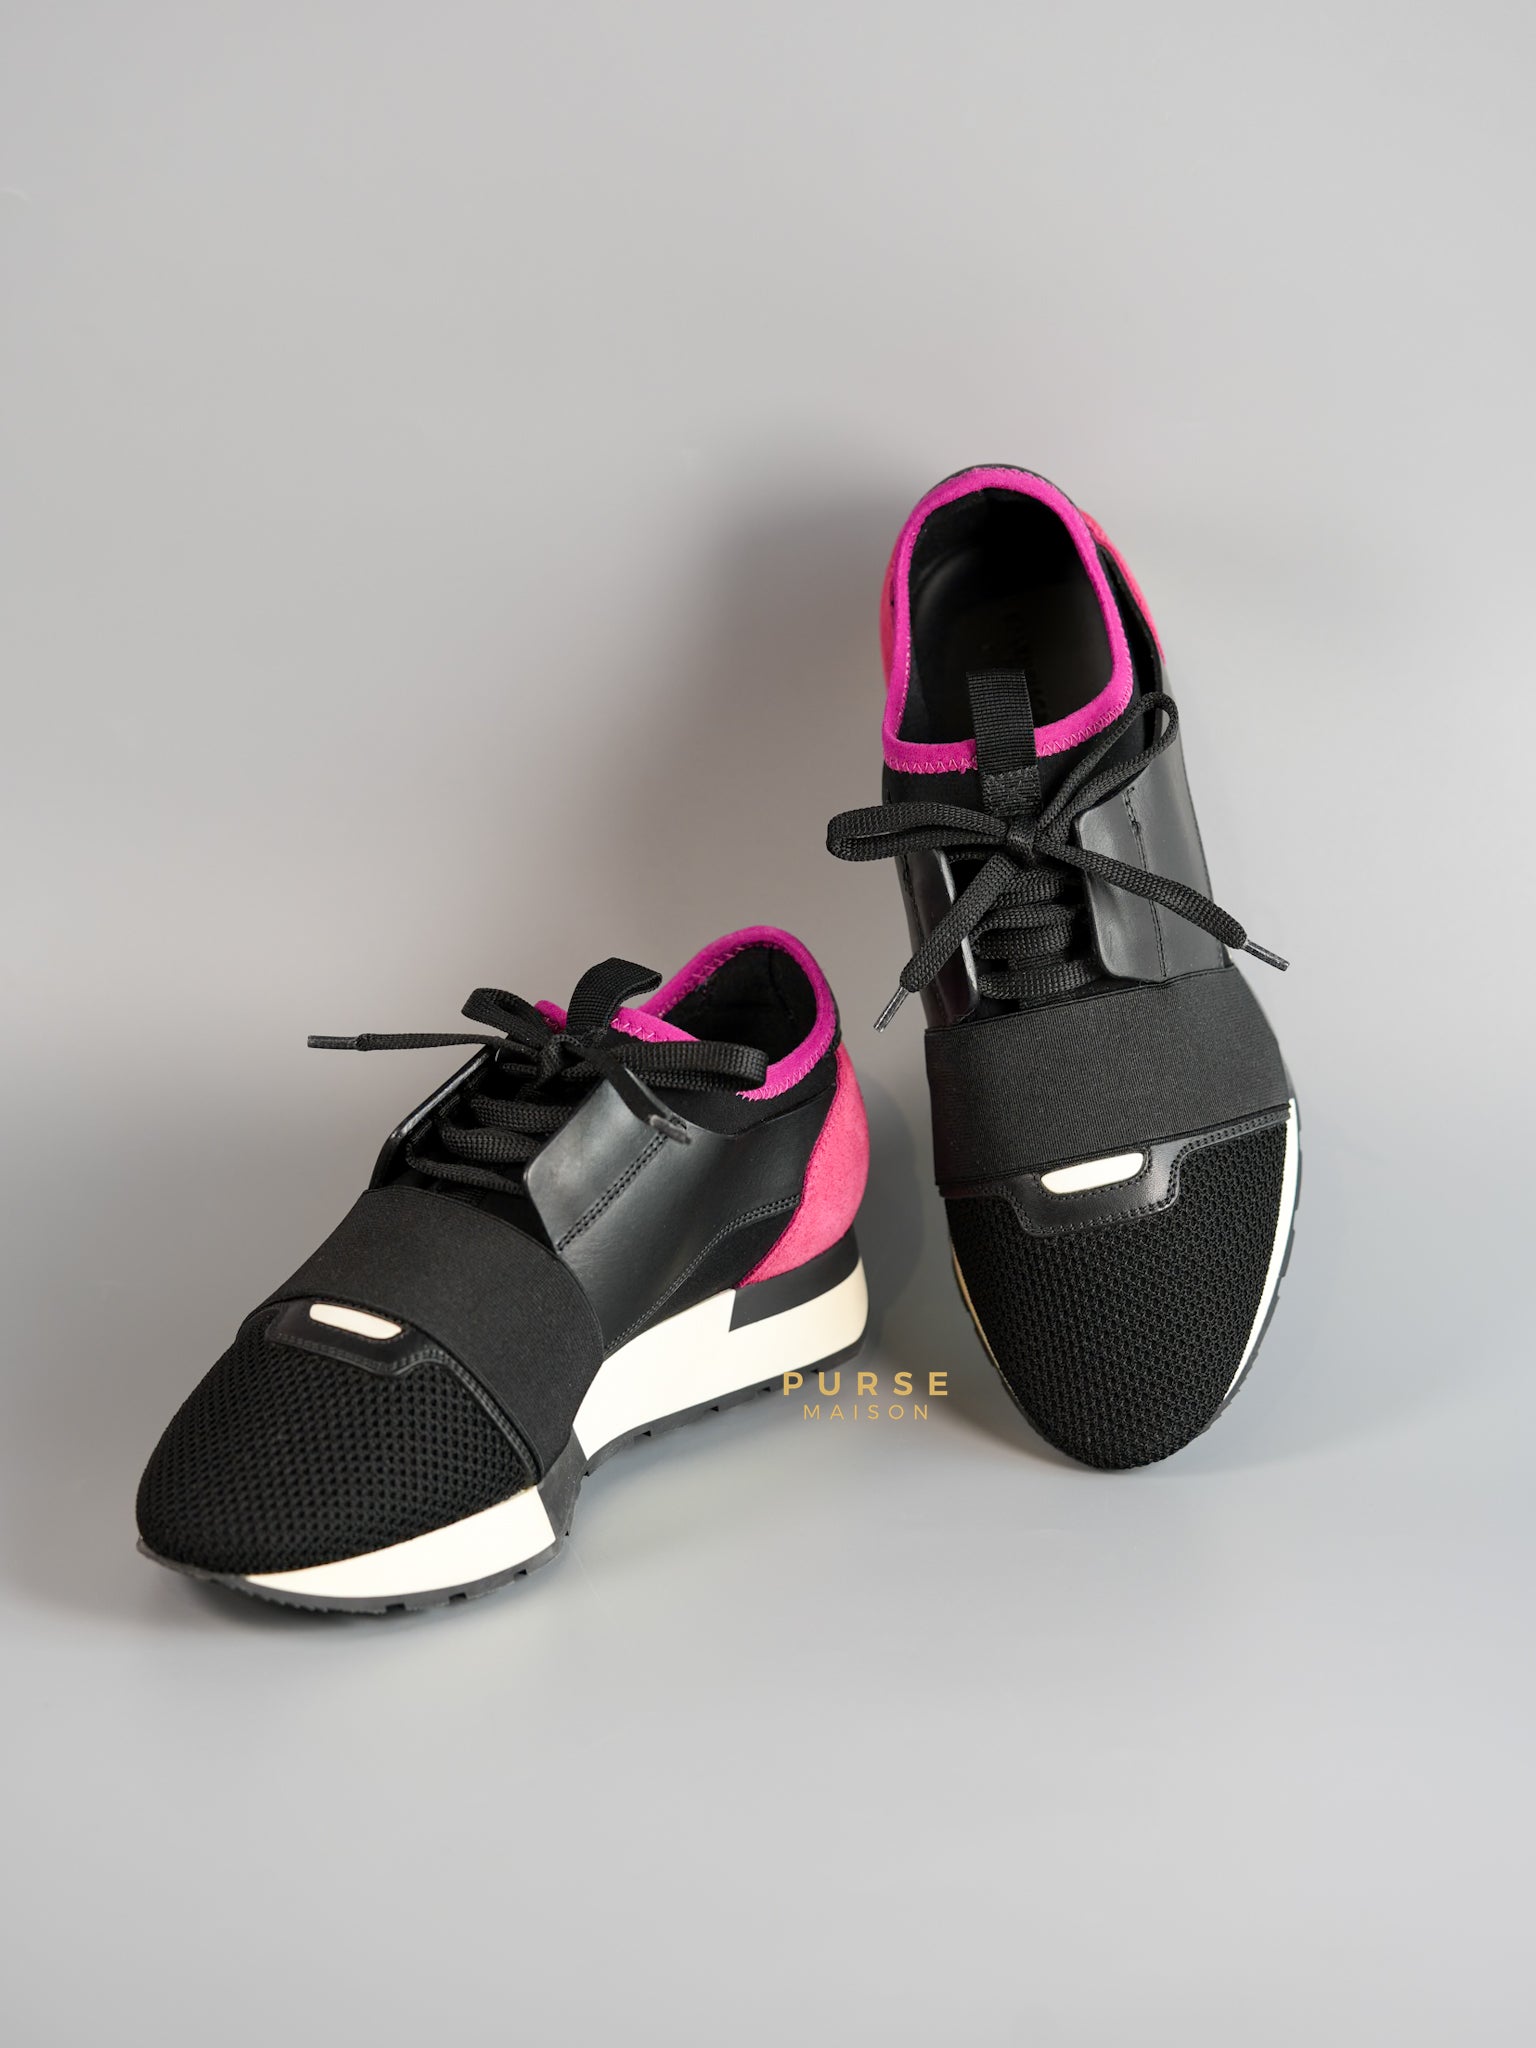 Race Runners Sneakers in Black & Fuschia Size 39 (26cm) | Purse Maison Luxury Bags Shop